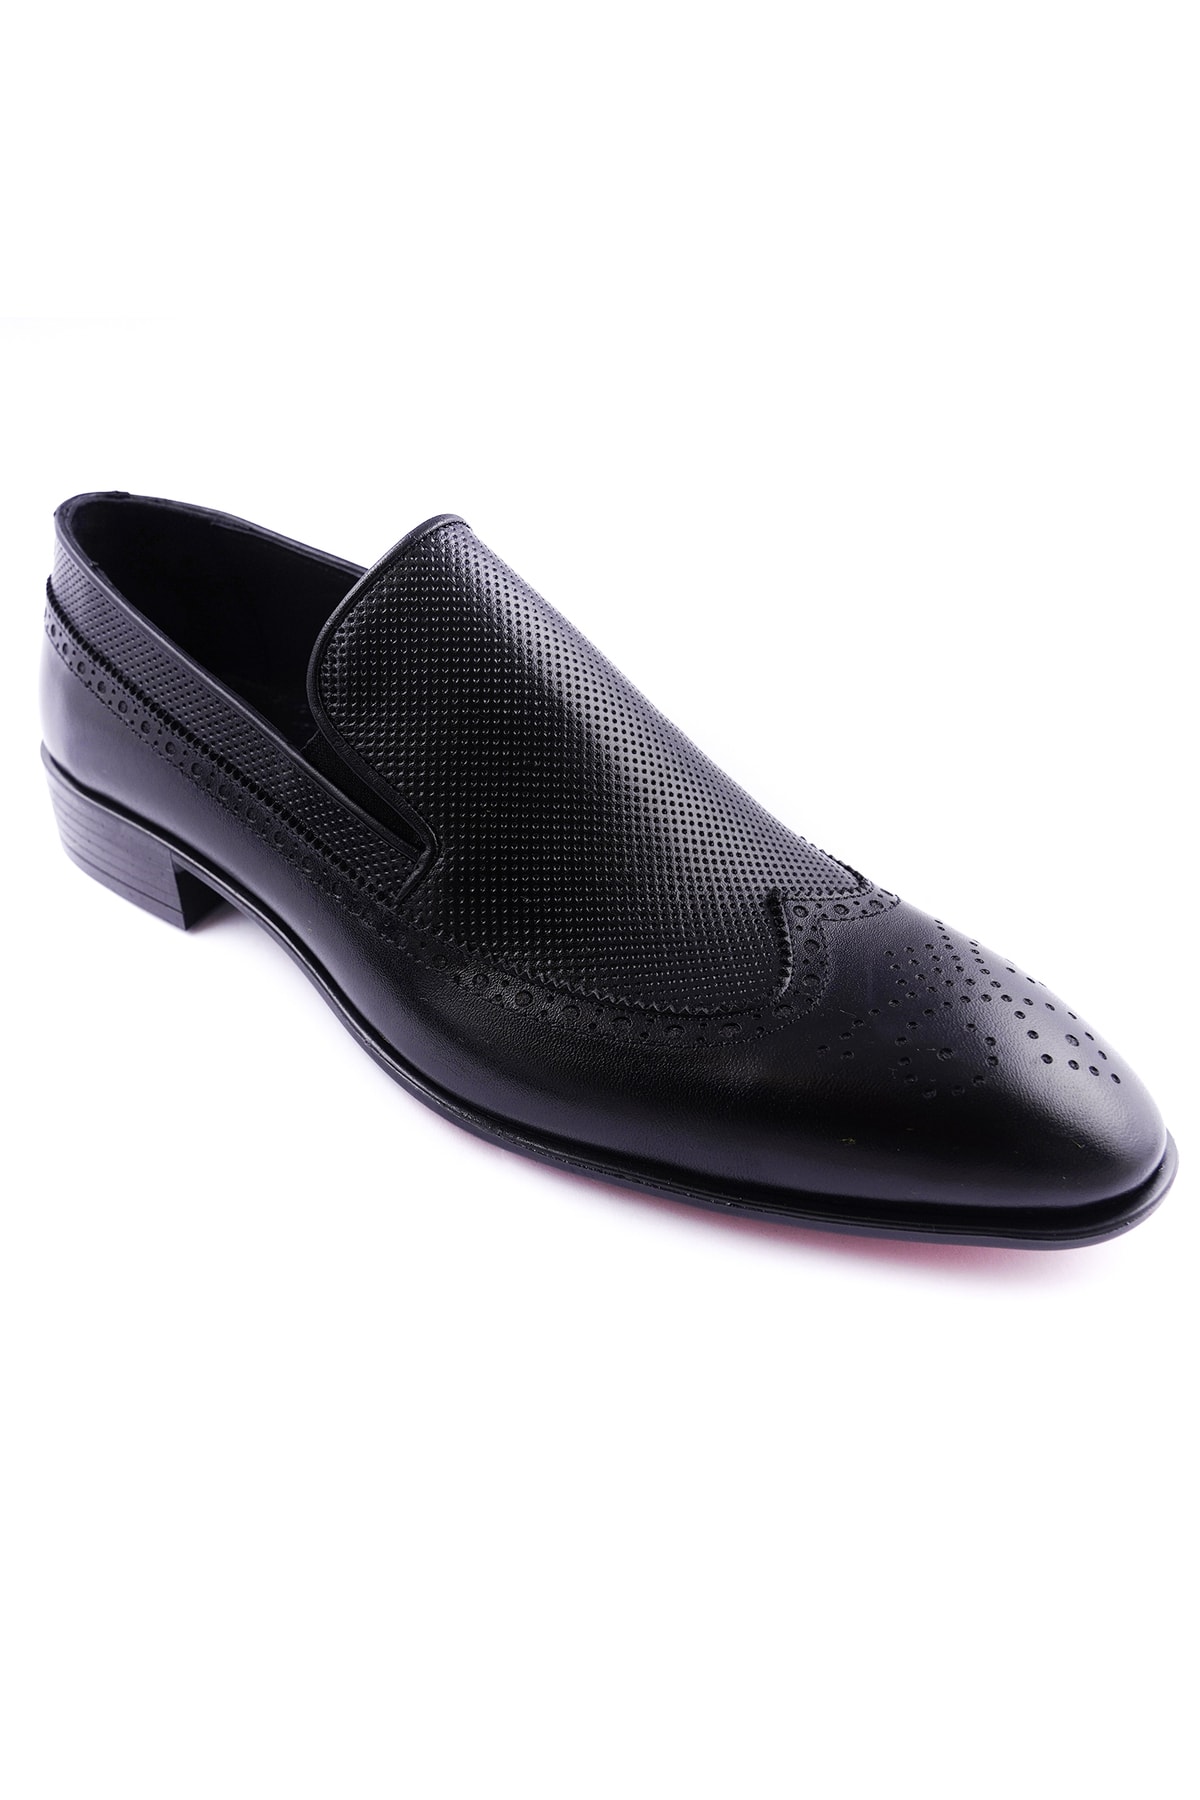 TM STYLE Hakiki Deri Erkek Modern Tasarım Klasik Ayakkabı Kundura Siyah Ayakkabı